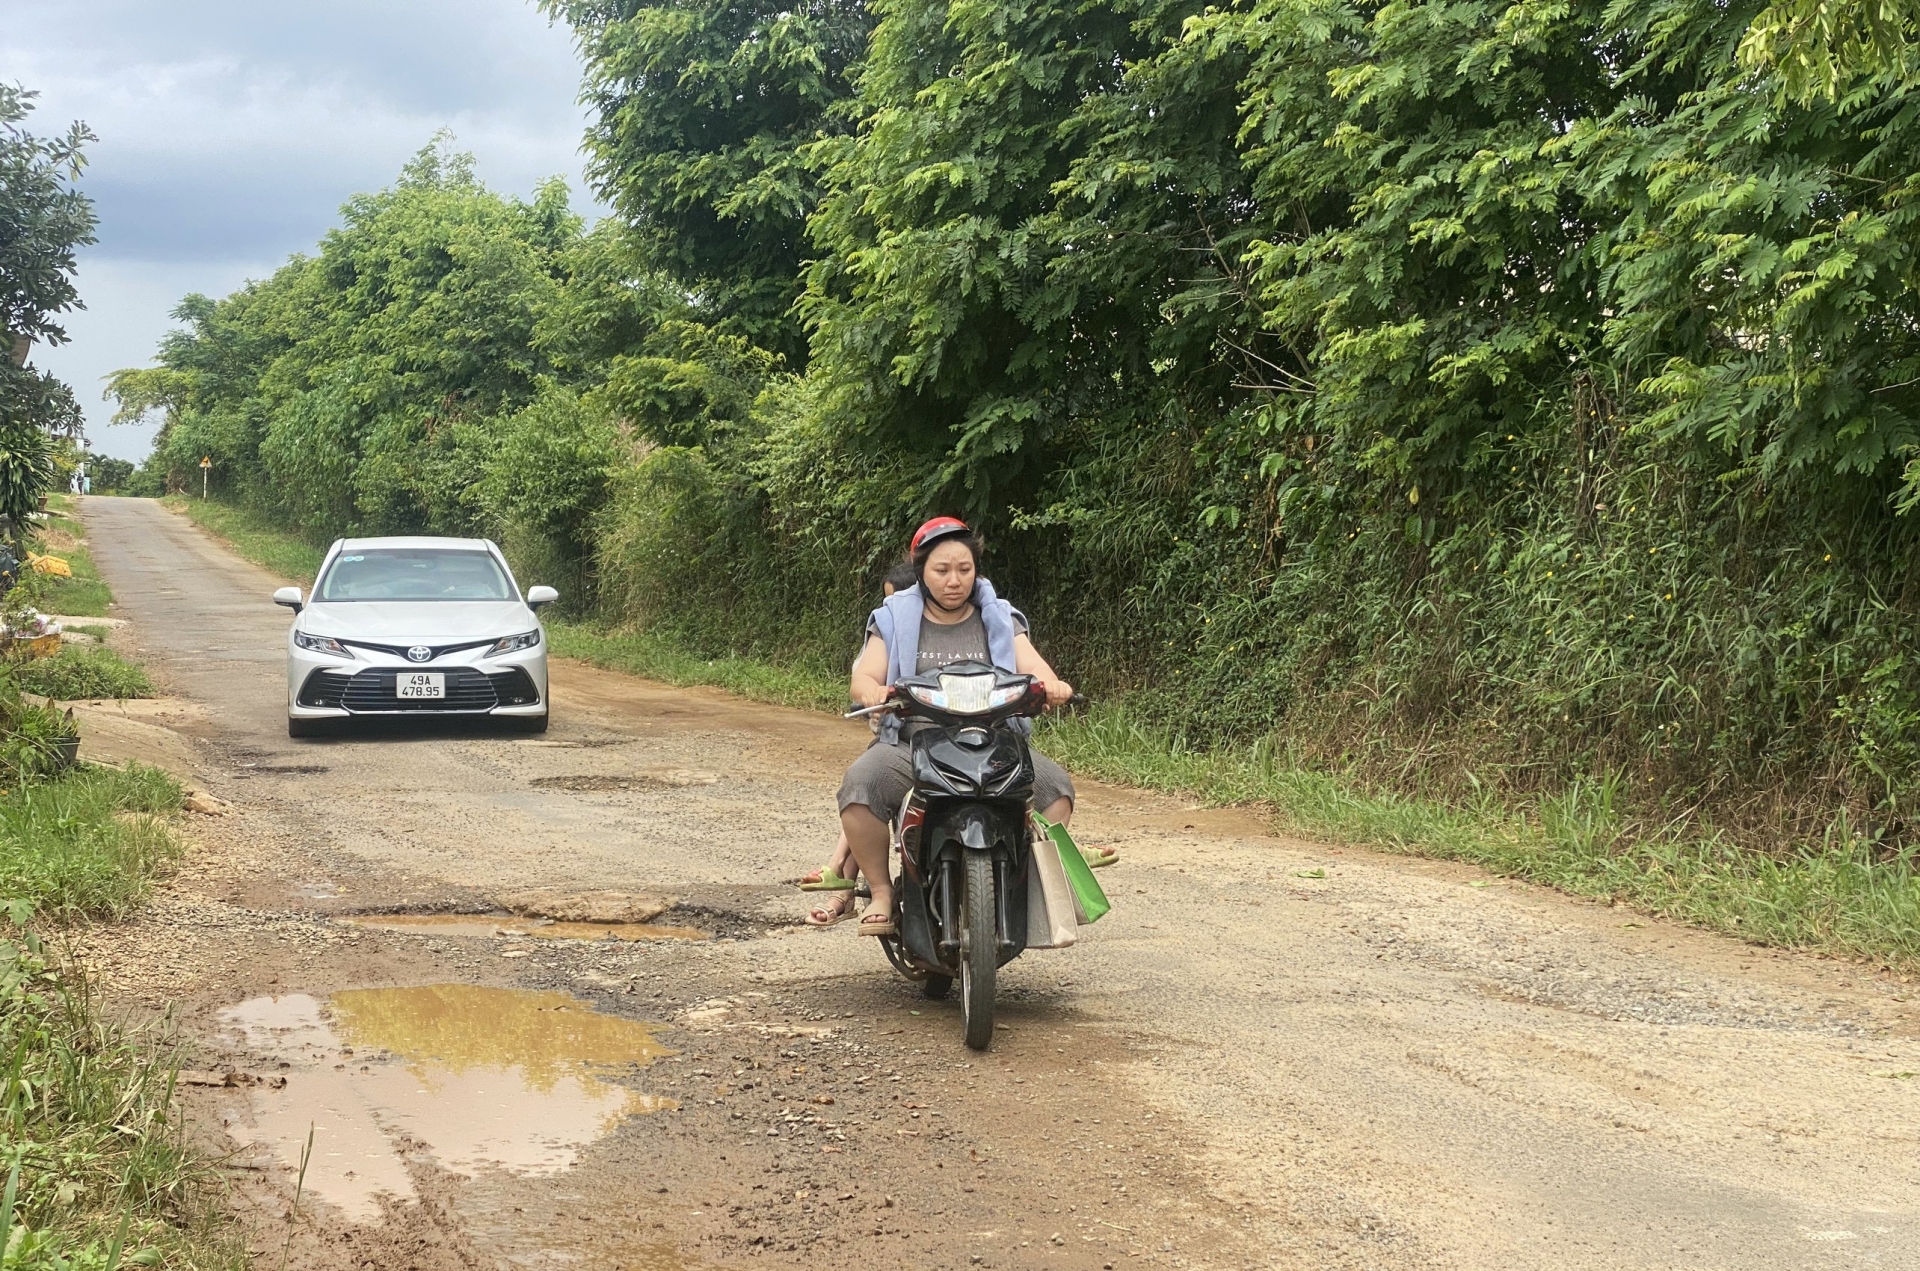 Đường Nguyễn Viết Xuân (xã Đam Bri) đang hư hỏng, xuống cấp nghiêm trọng nhưng không thể nâng cấp, xây dựng do vướng quy hoạch khoáng sản